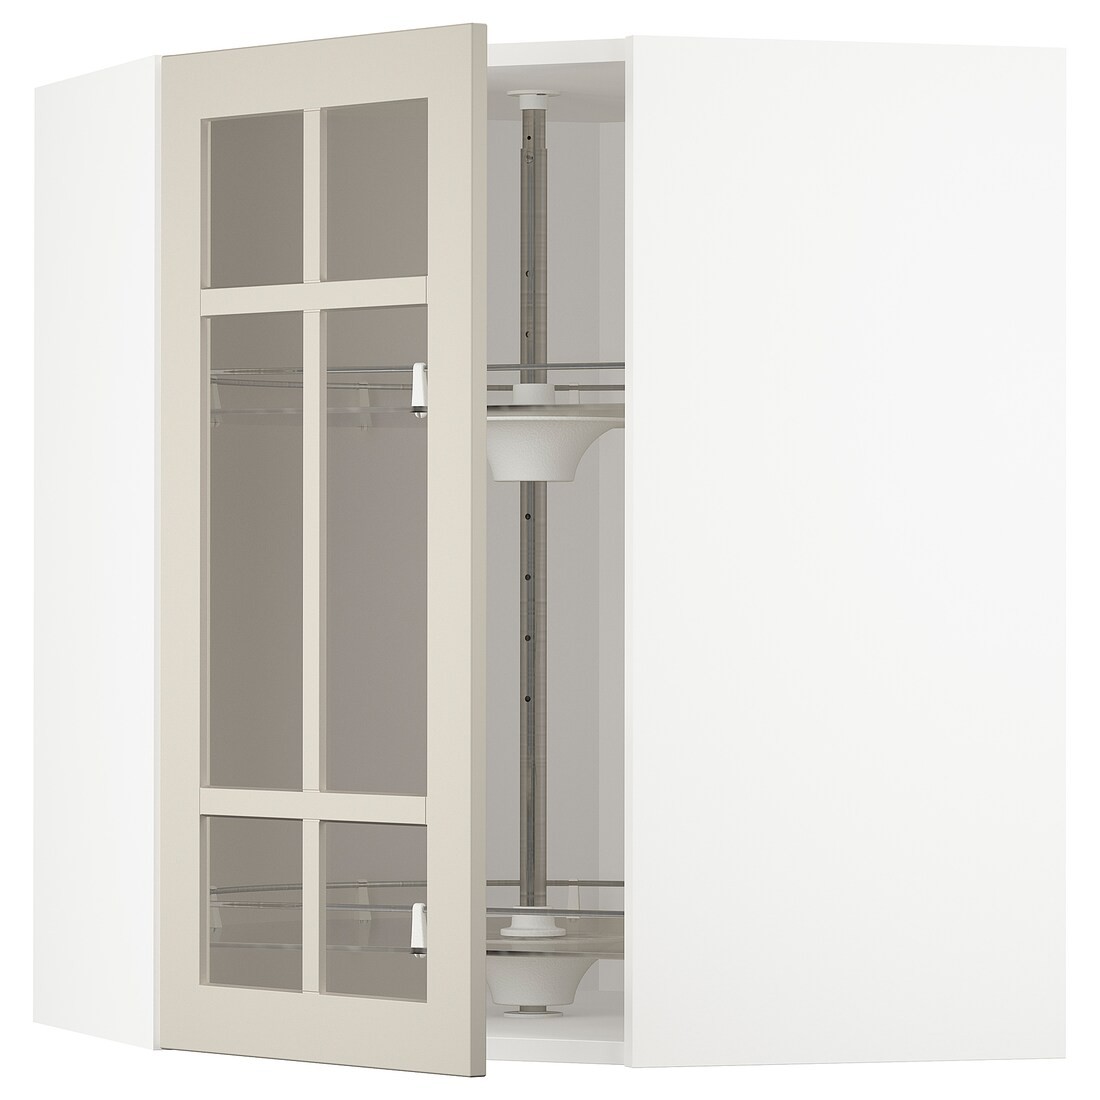 IKEA METOD МЕТОД Угловой настенный шкаф с каруселью / стеклянная дверь, белый / Stensund бежевый, 68x80 см 39407980 394.079.80